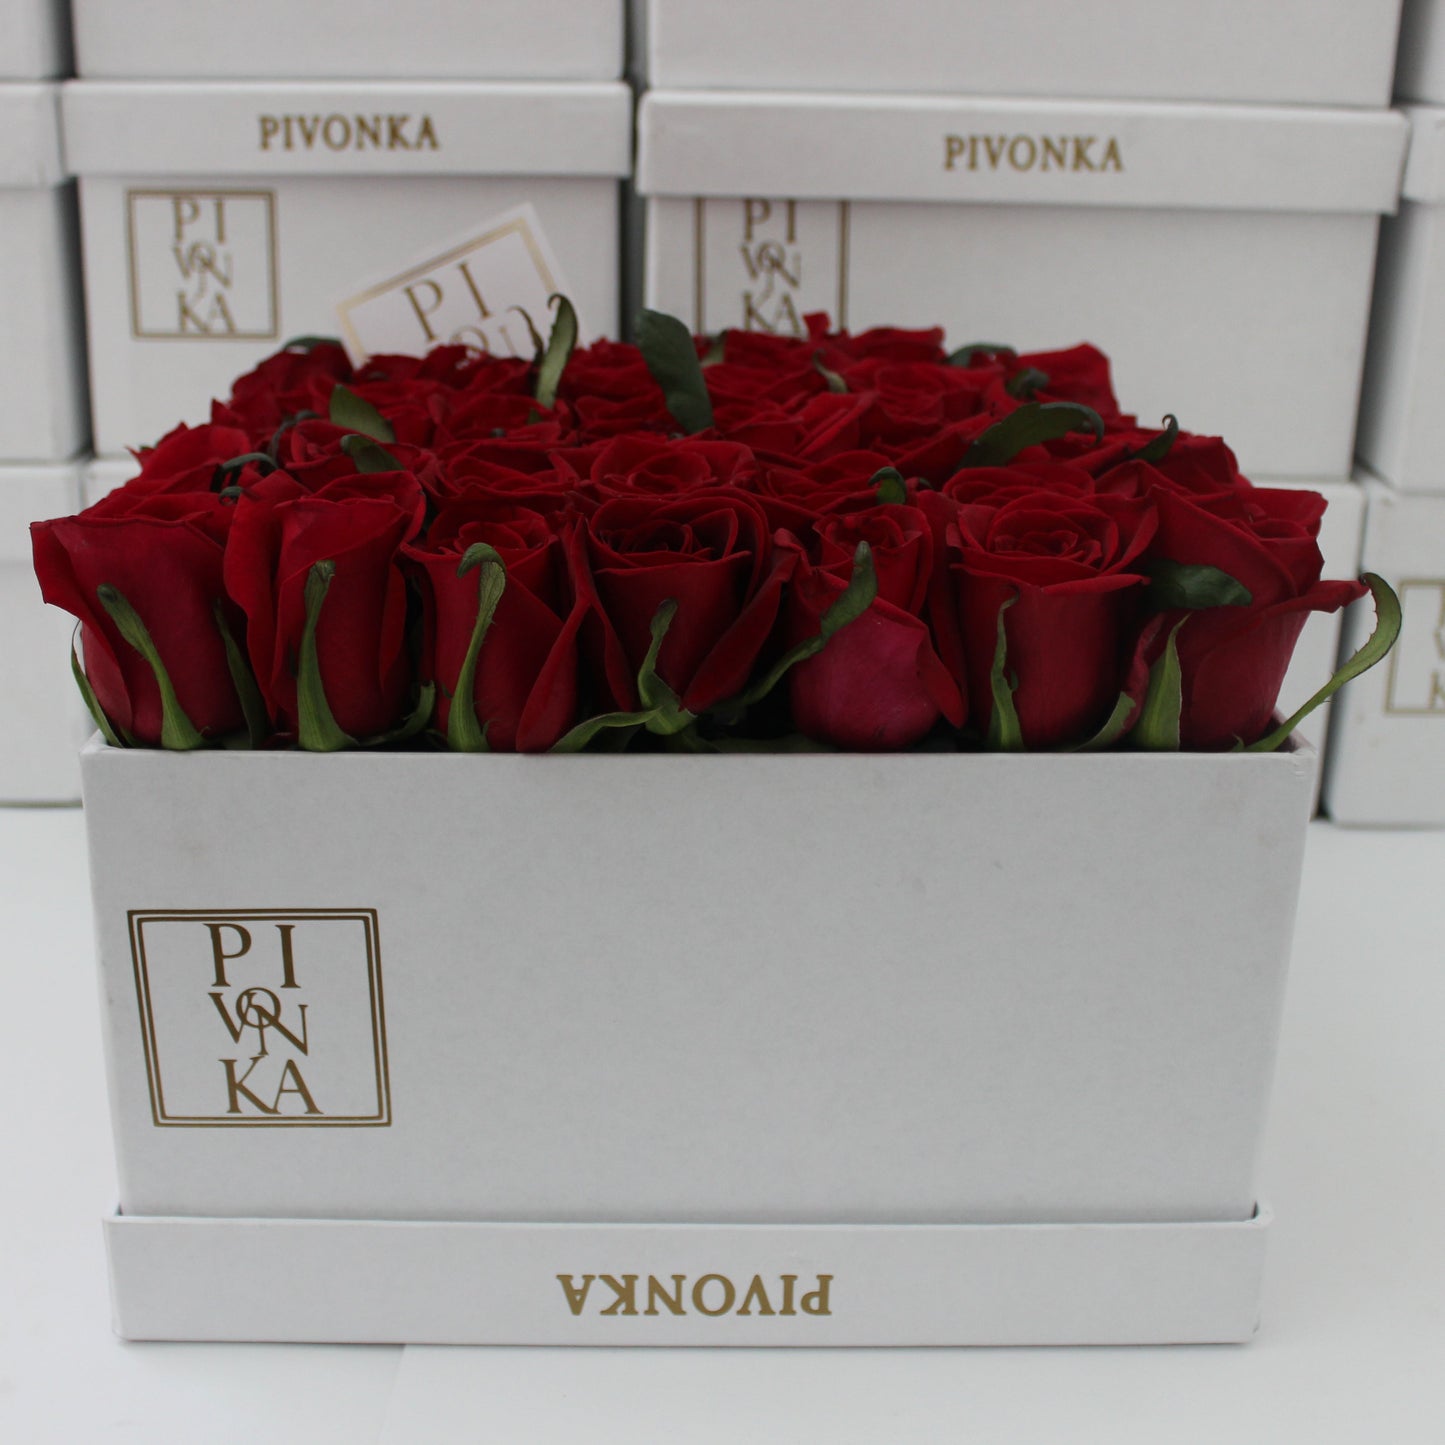 Pivonka Flores. Arreglo cuadrangular de 50 rosas rojas en base blanca